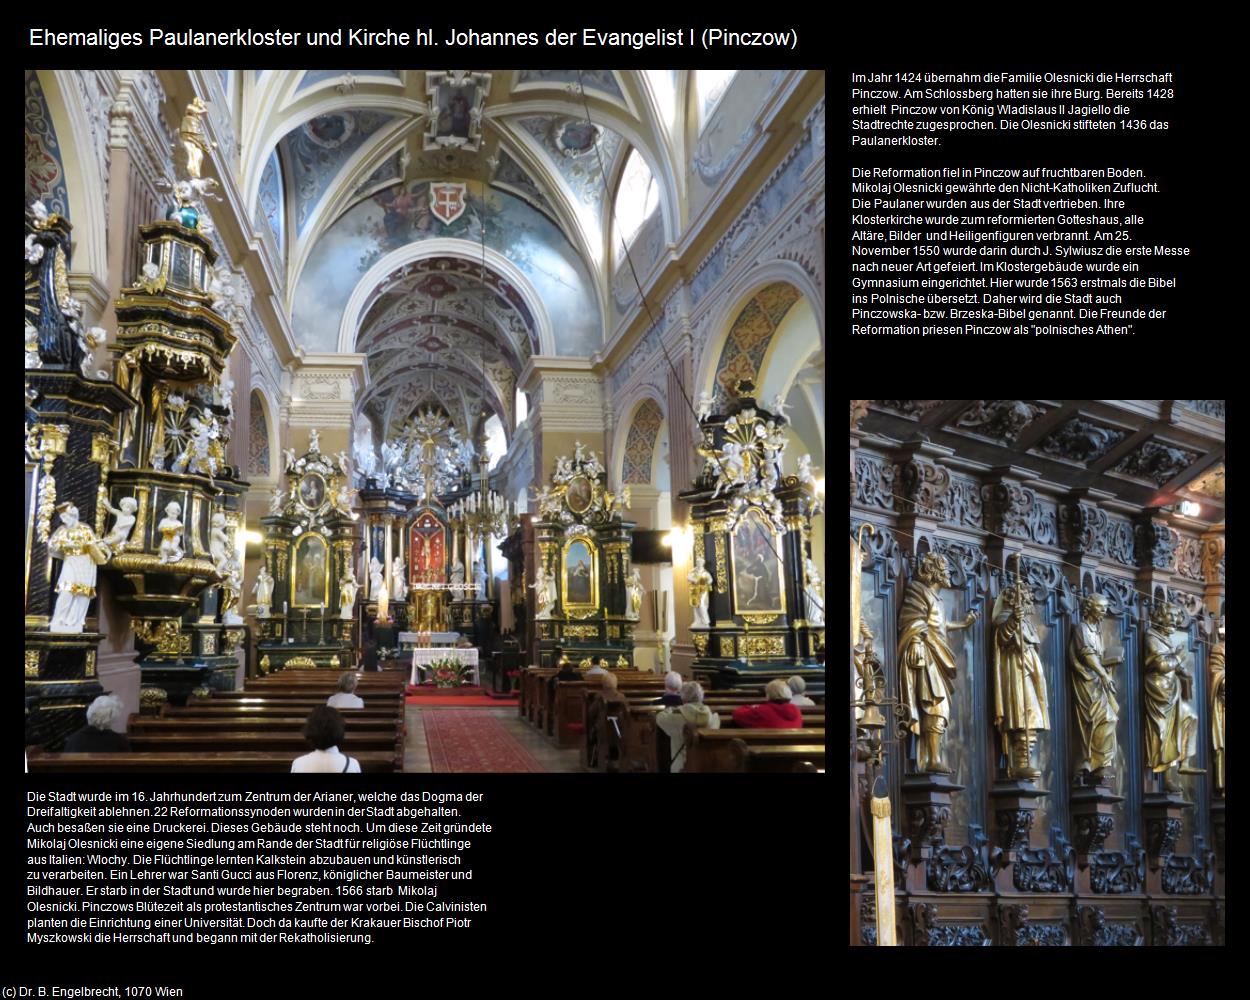 Ehem. Paulanerkloster und Kirche hl. Johannes der Evangelist I (Pinczow) in POLEN-Galizien